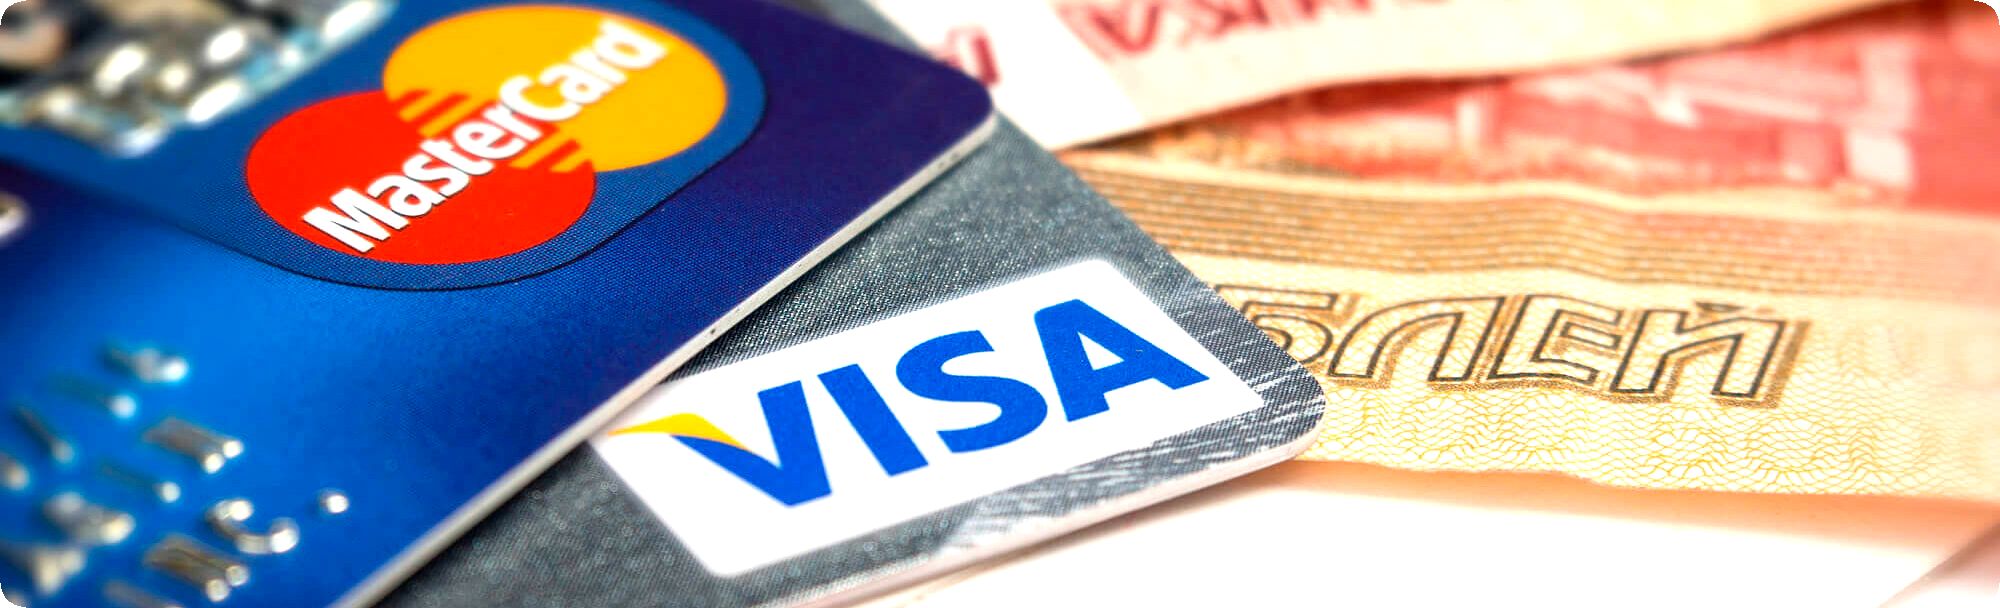 где оформить кредитную карту быстро по паспорту без подтверждения дохода